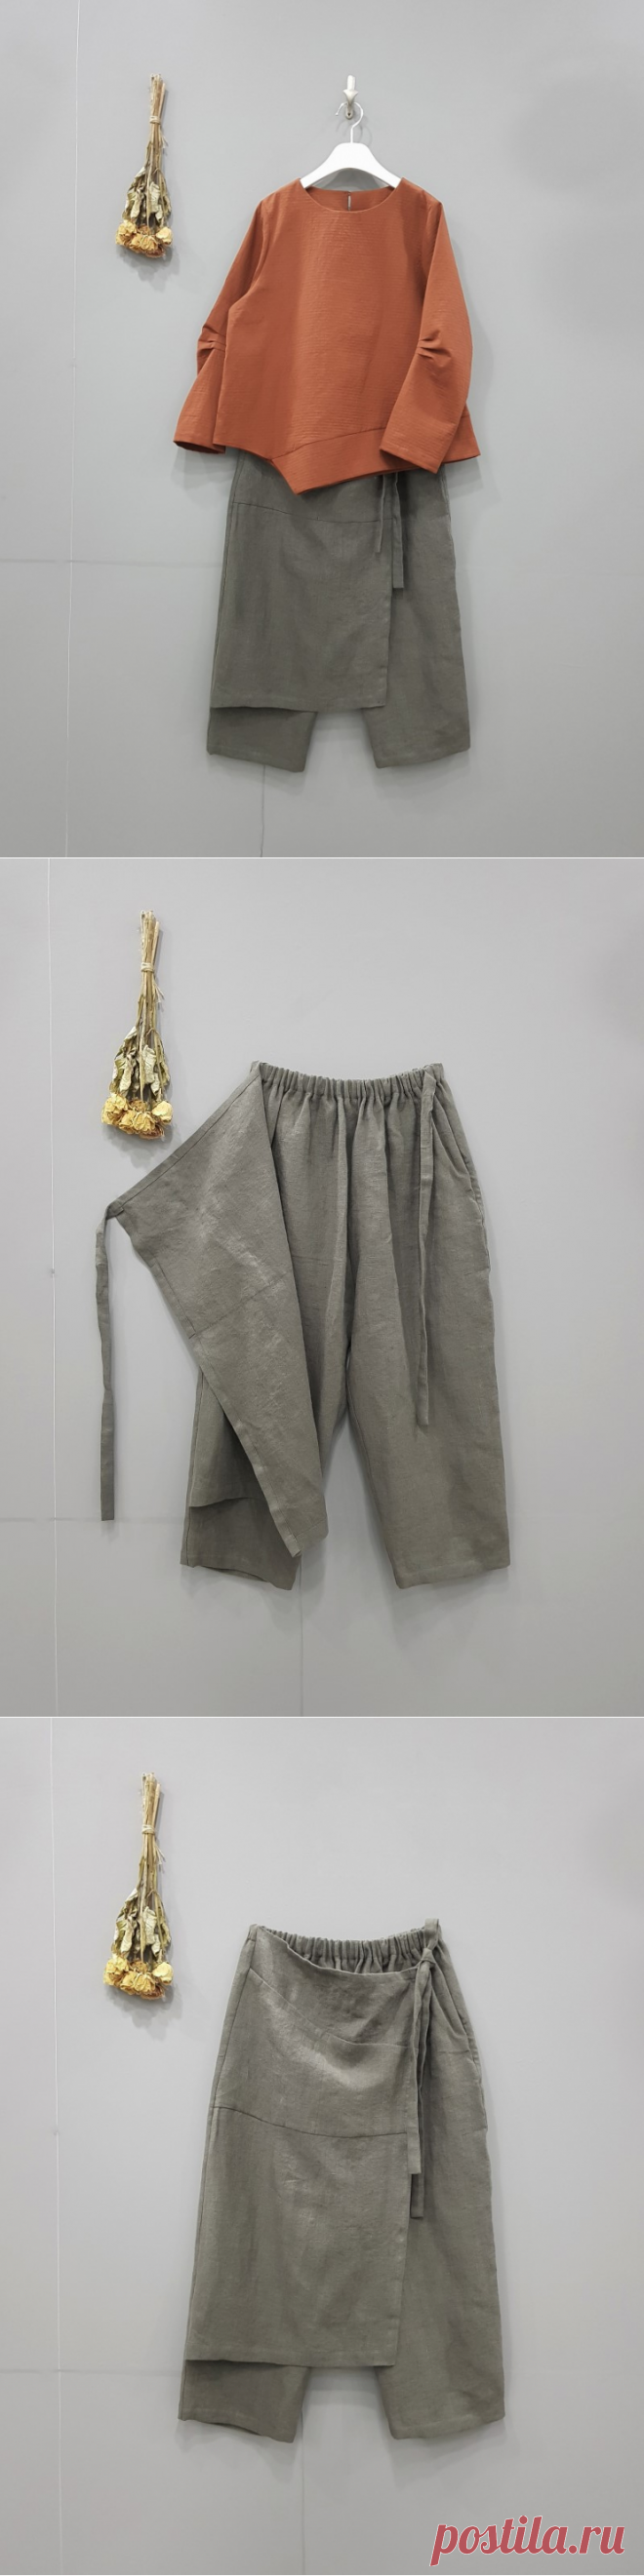 Изготовление обтягивающих фартуков брюк-корейца JoongAng Daily